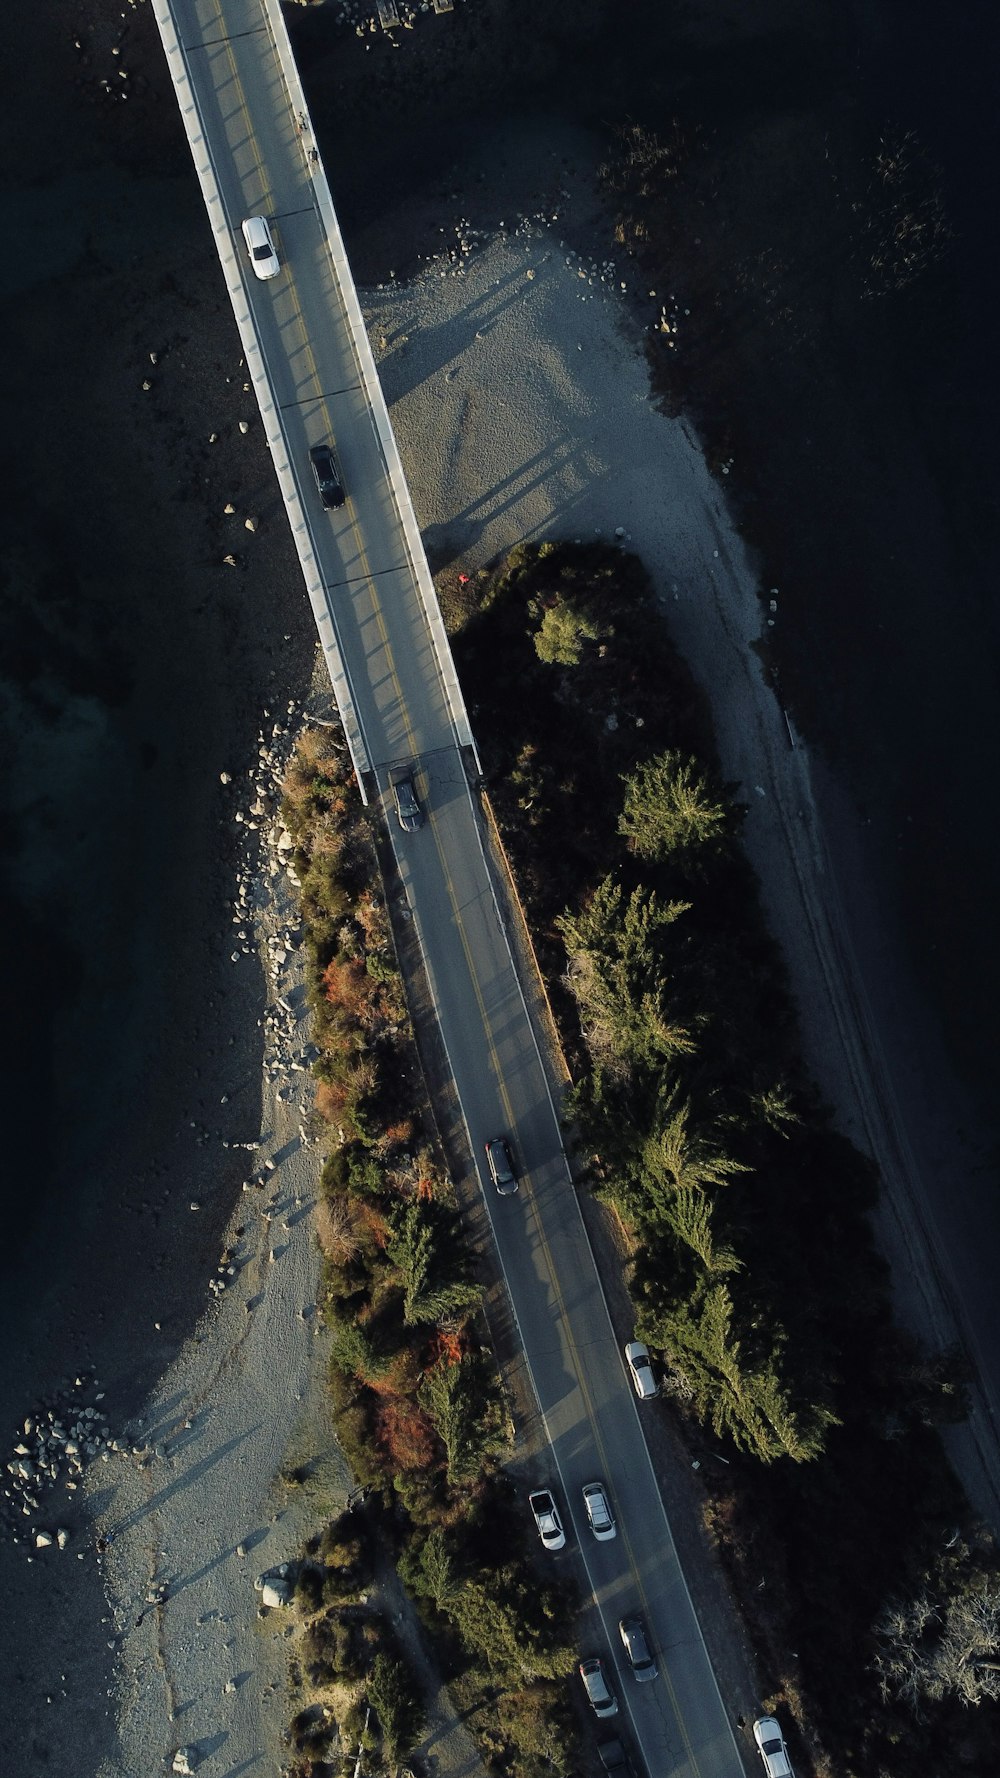 Una vista aérea de una carretera con coches circulando por ella